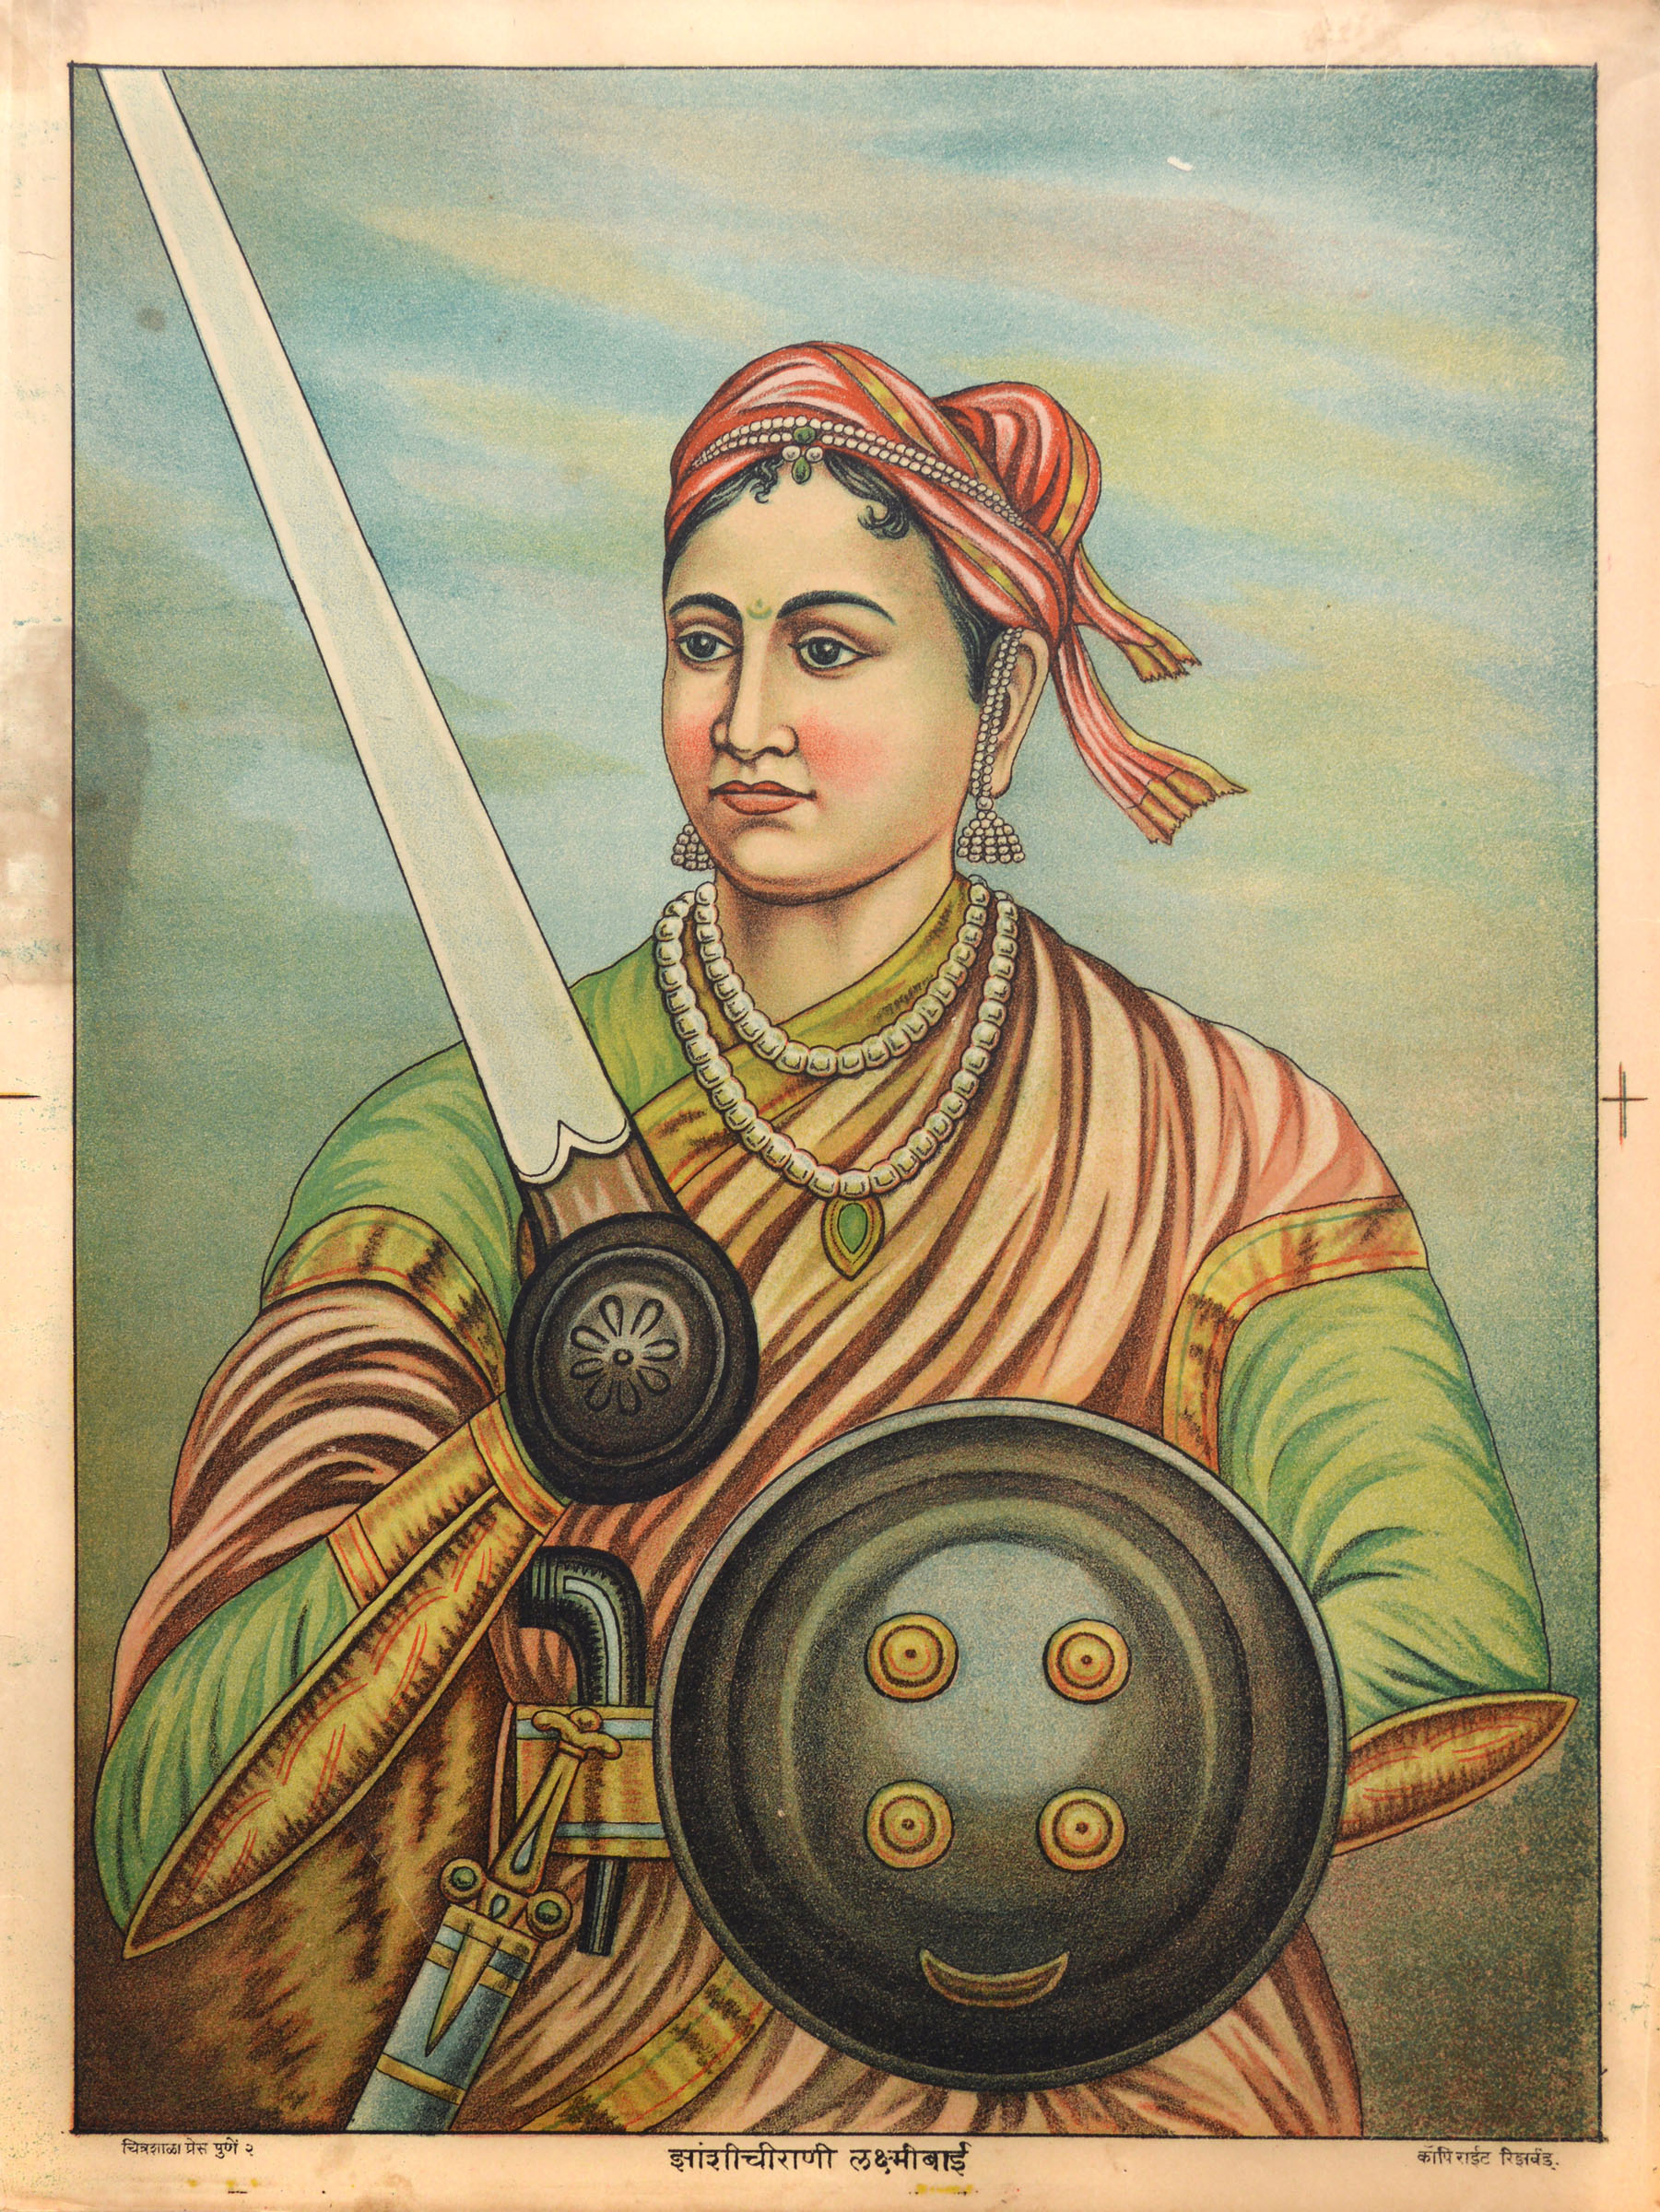 Lakshmibai, the Rani of Jhansi (1828-1858)